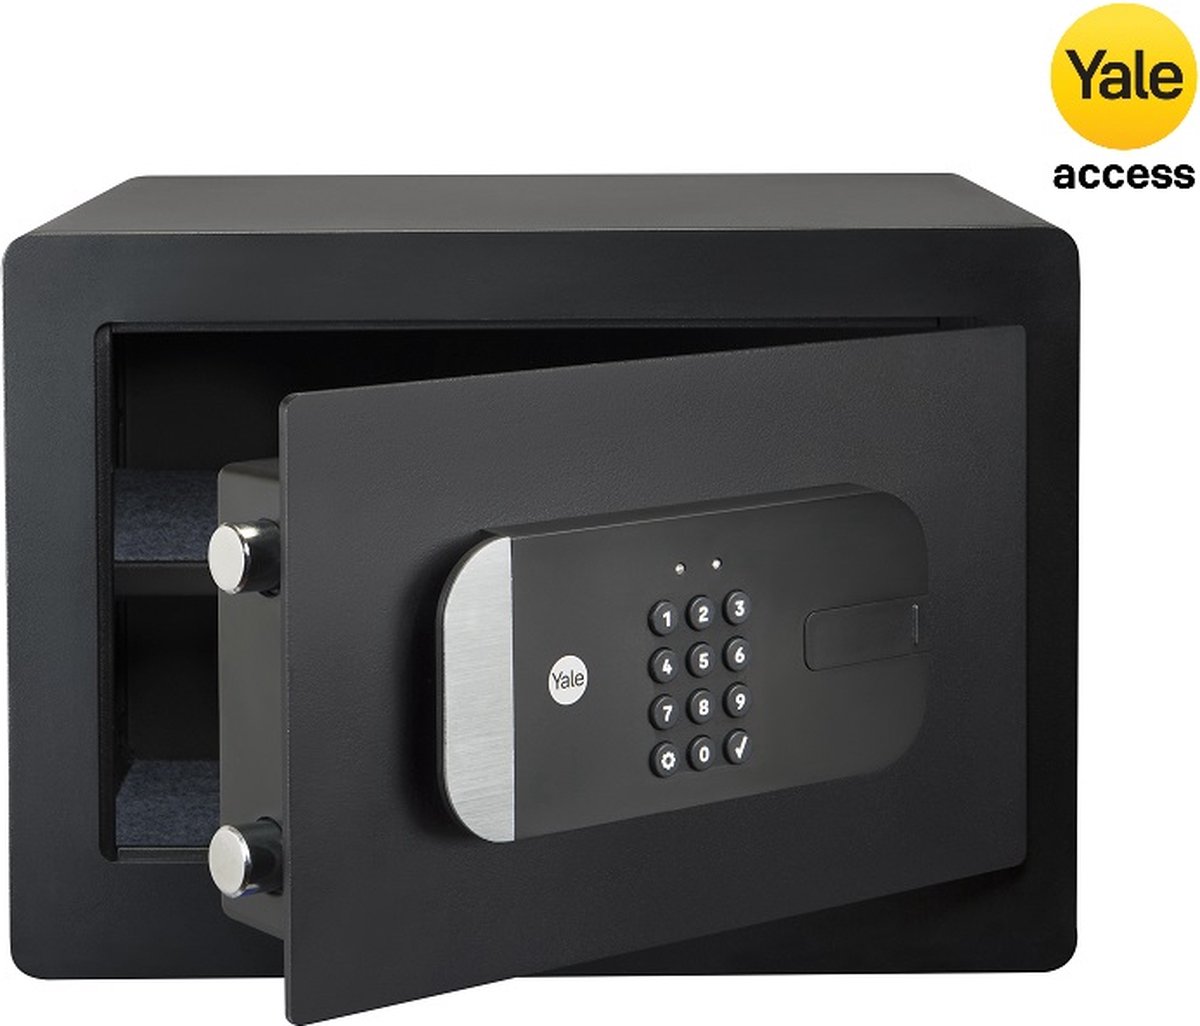 Yale Kluis - Smart Safe - Cijferslot - Kluis met Alarm - Slimme Kluis - 250 x 350 x 300 mm - Zwart